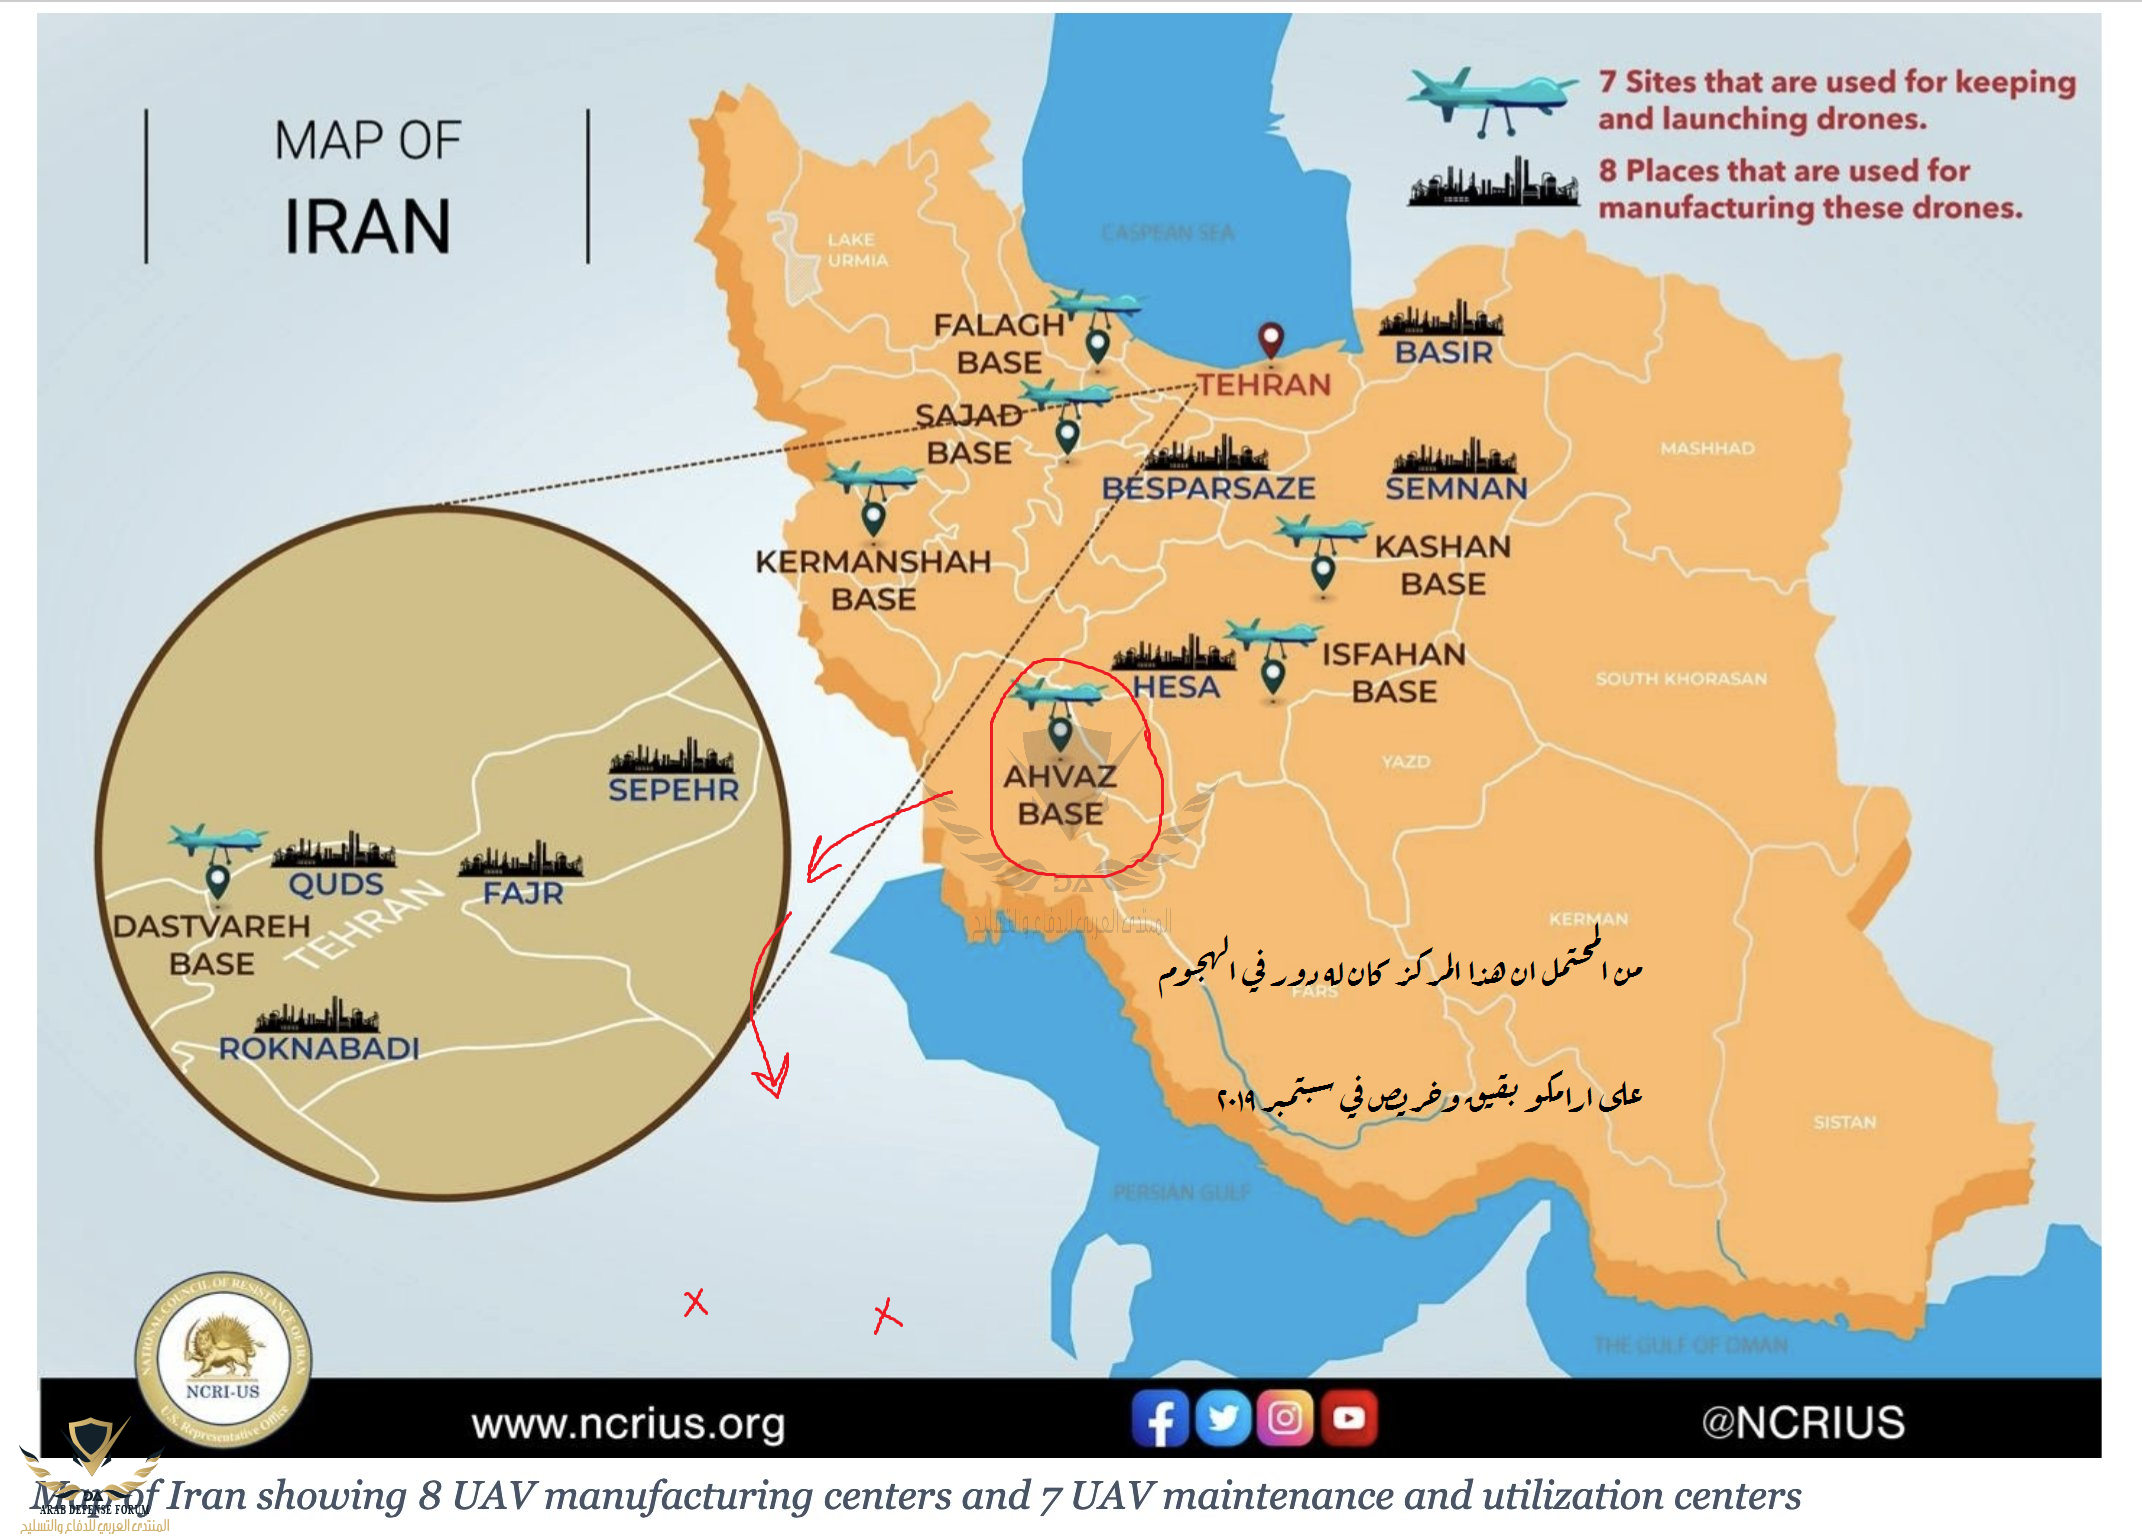  تصنيع المسيّرات التابعة للقوات الجوية للحرس الثوري الإيراني و 7 مراكز صيانة واستخدام الطائرات...png